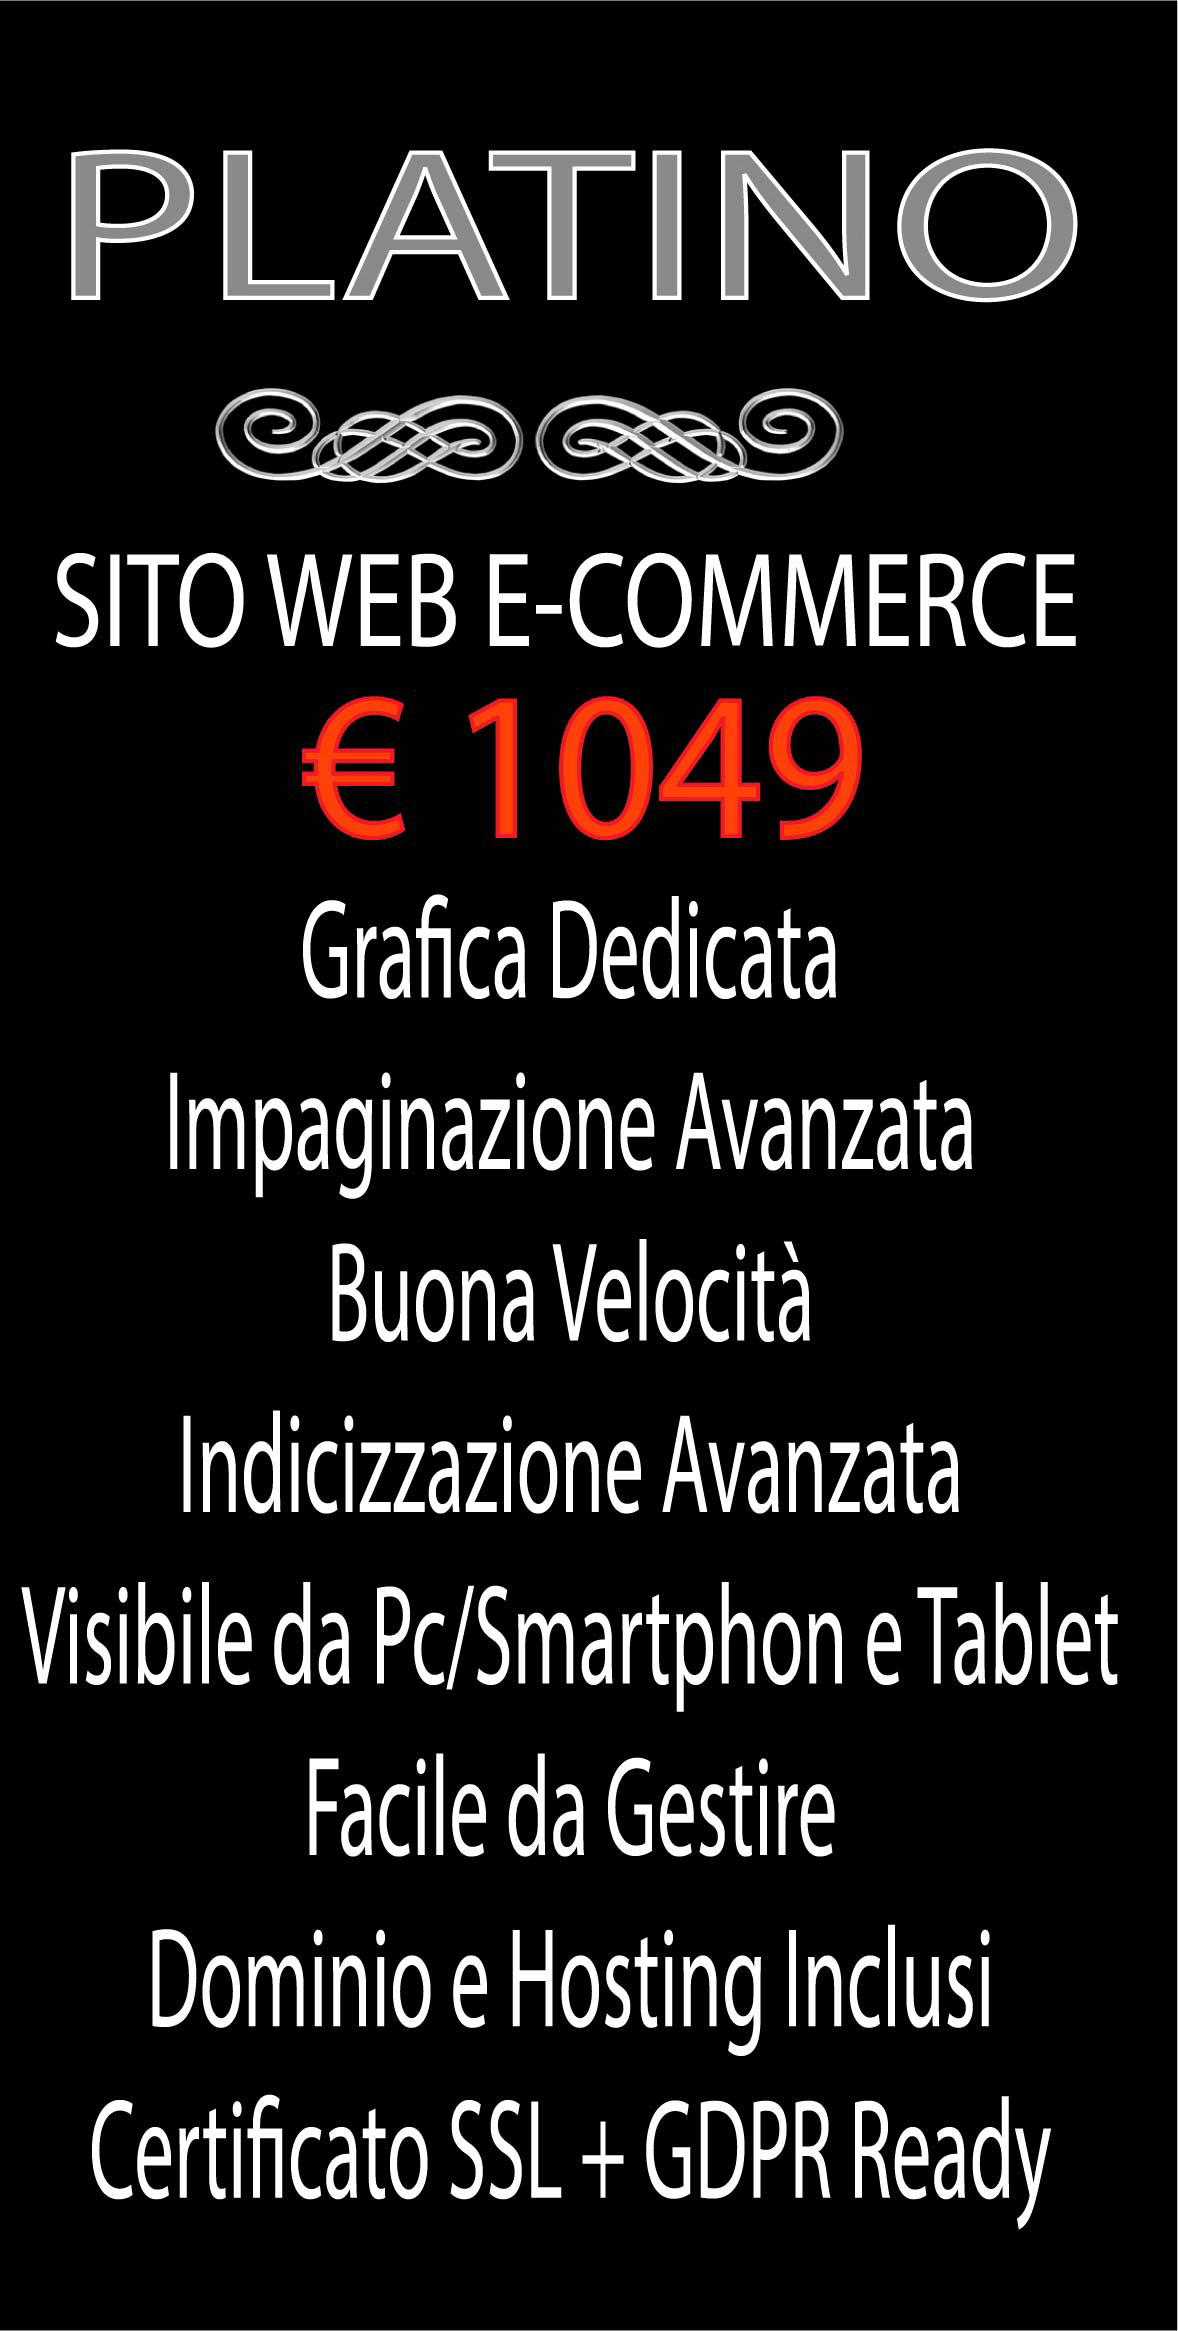 SITO WEB E-COMMERCE-PLATINO